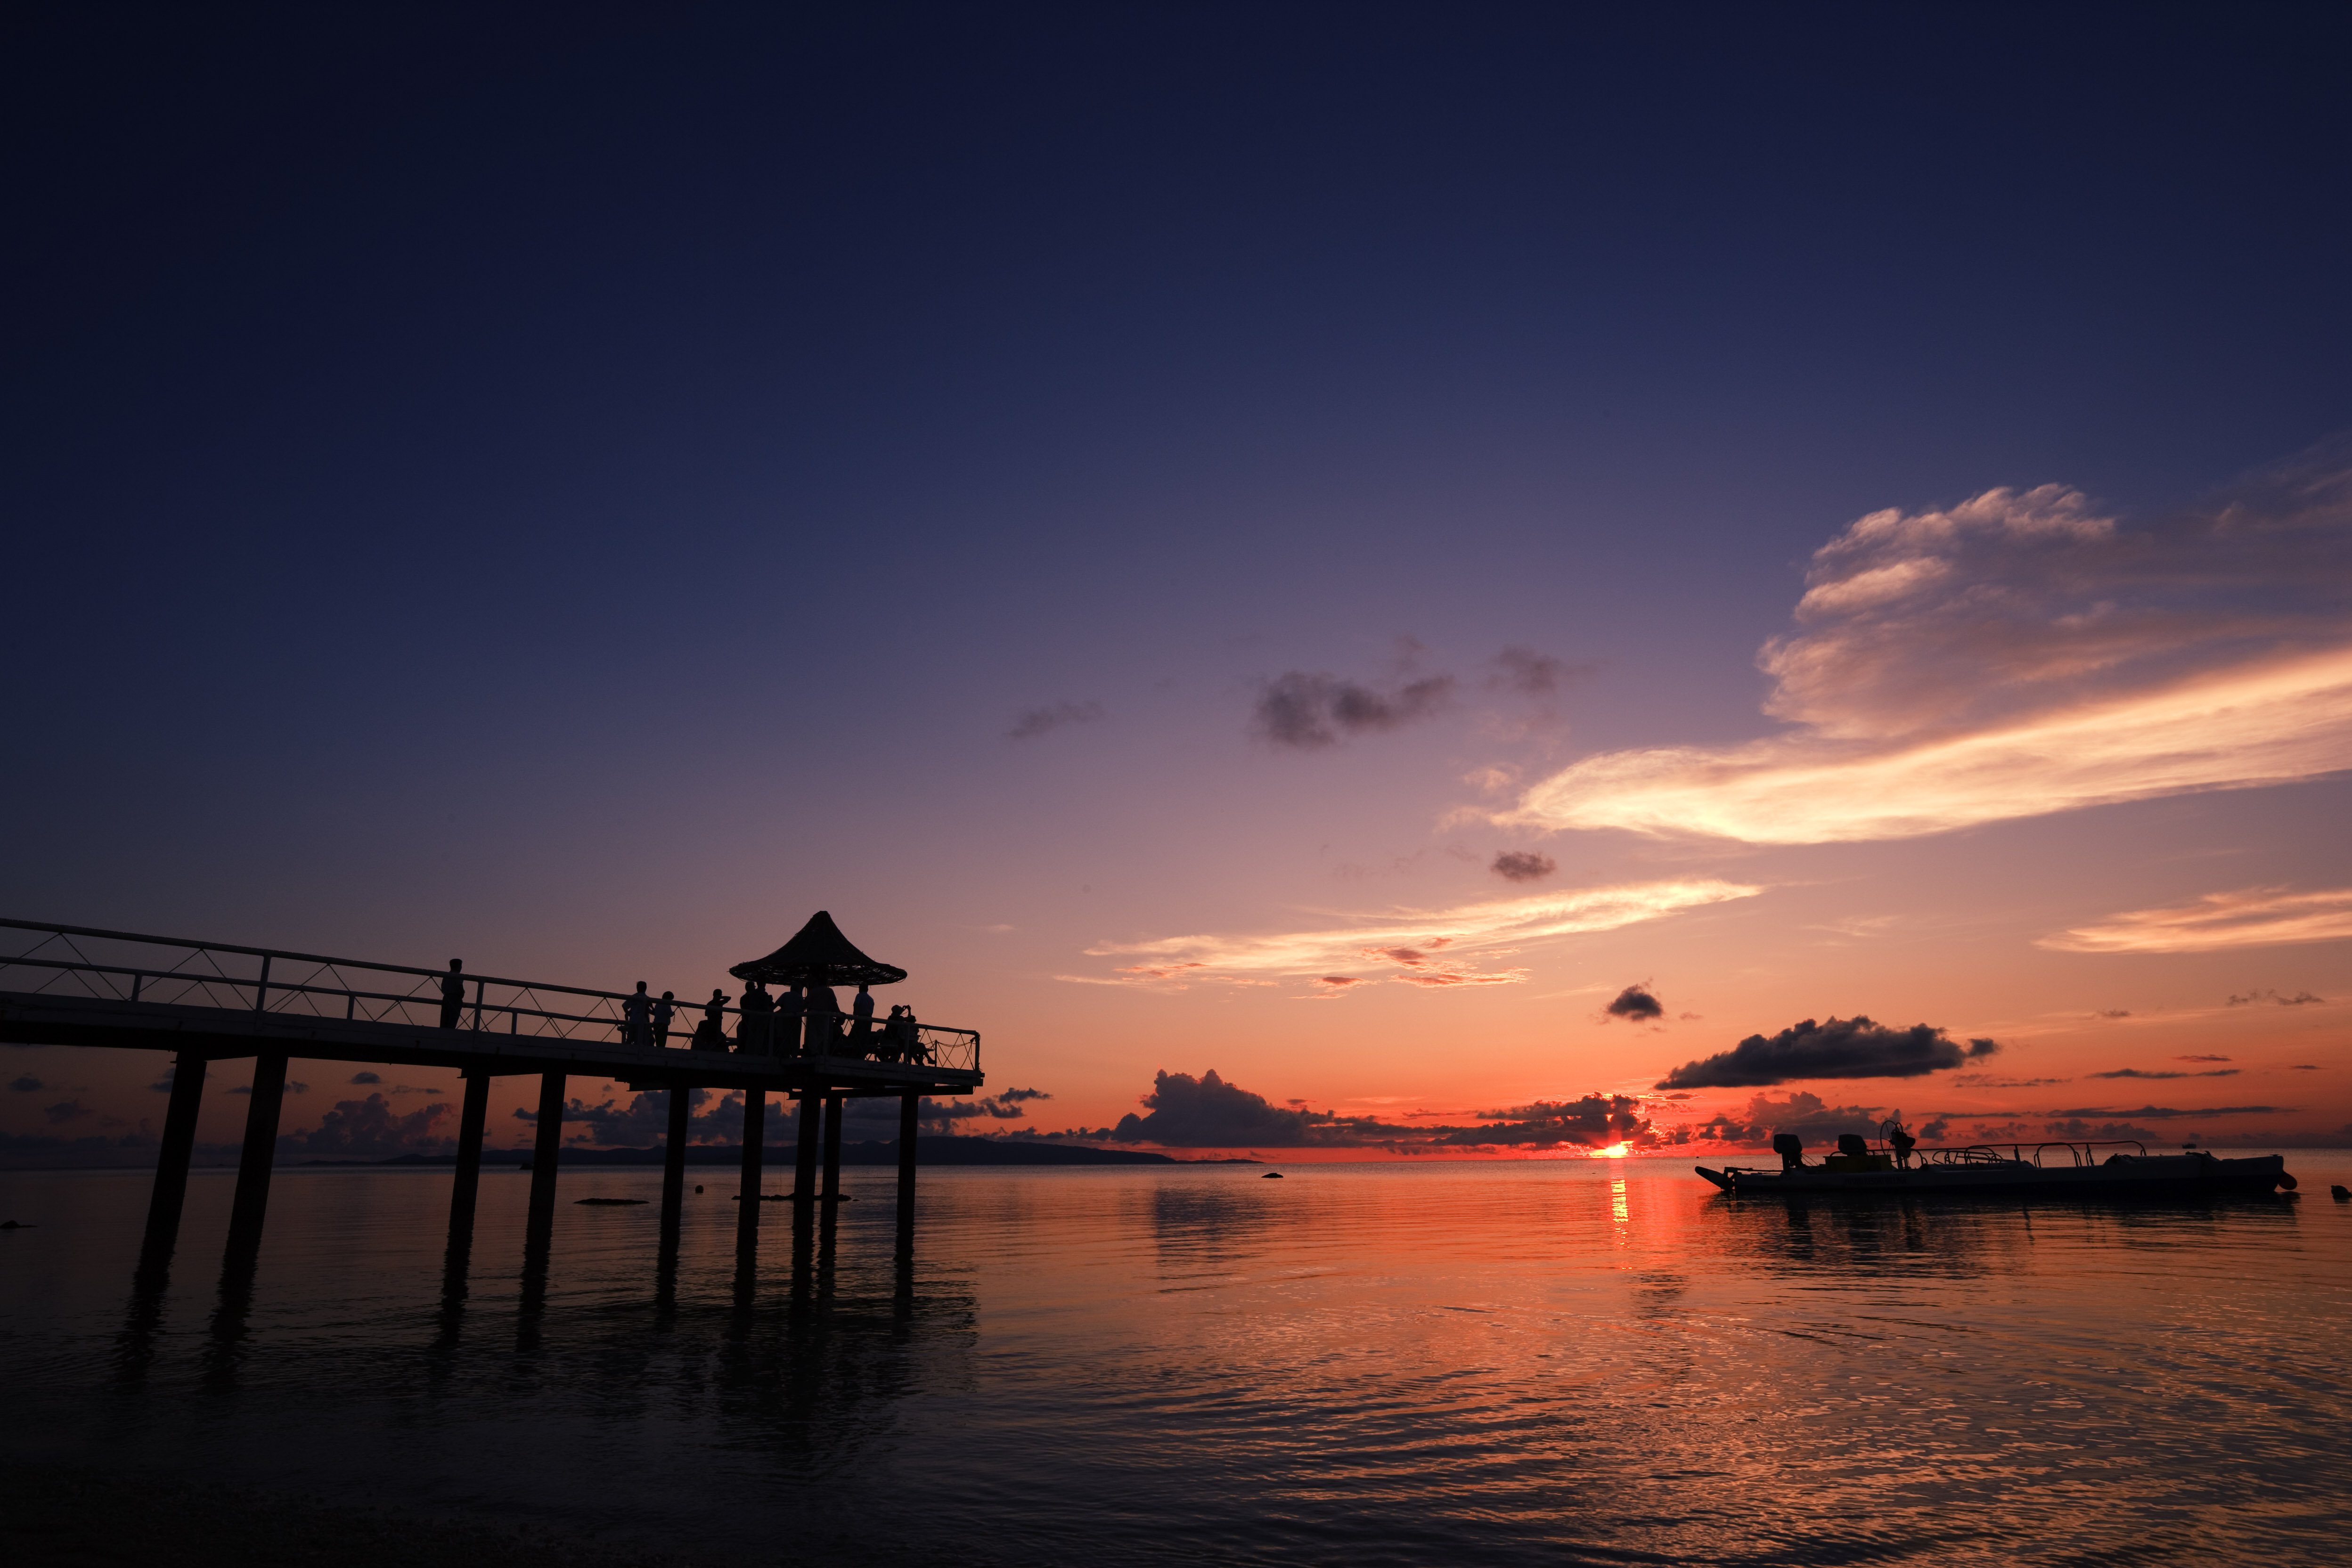 fotografia, materiale, libero il panorama, dipinga, fotografia di scorta,Crepuscolo dell'isola di Ishigaki-jima, chiatta, accendino, Il sole, silhouette